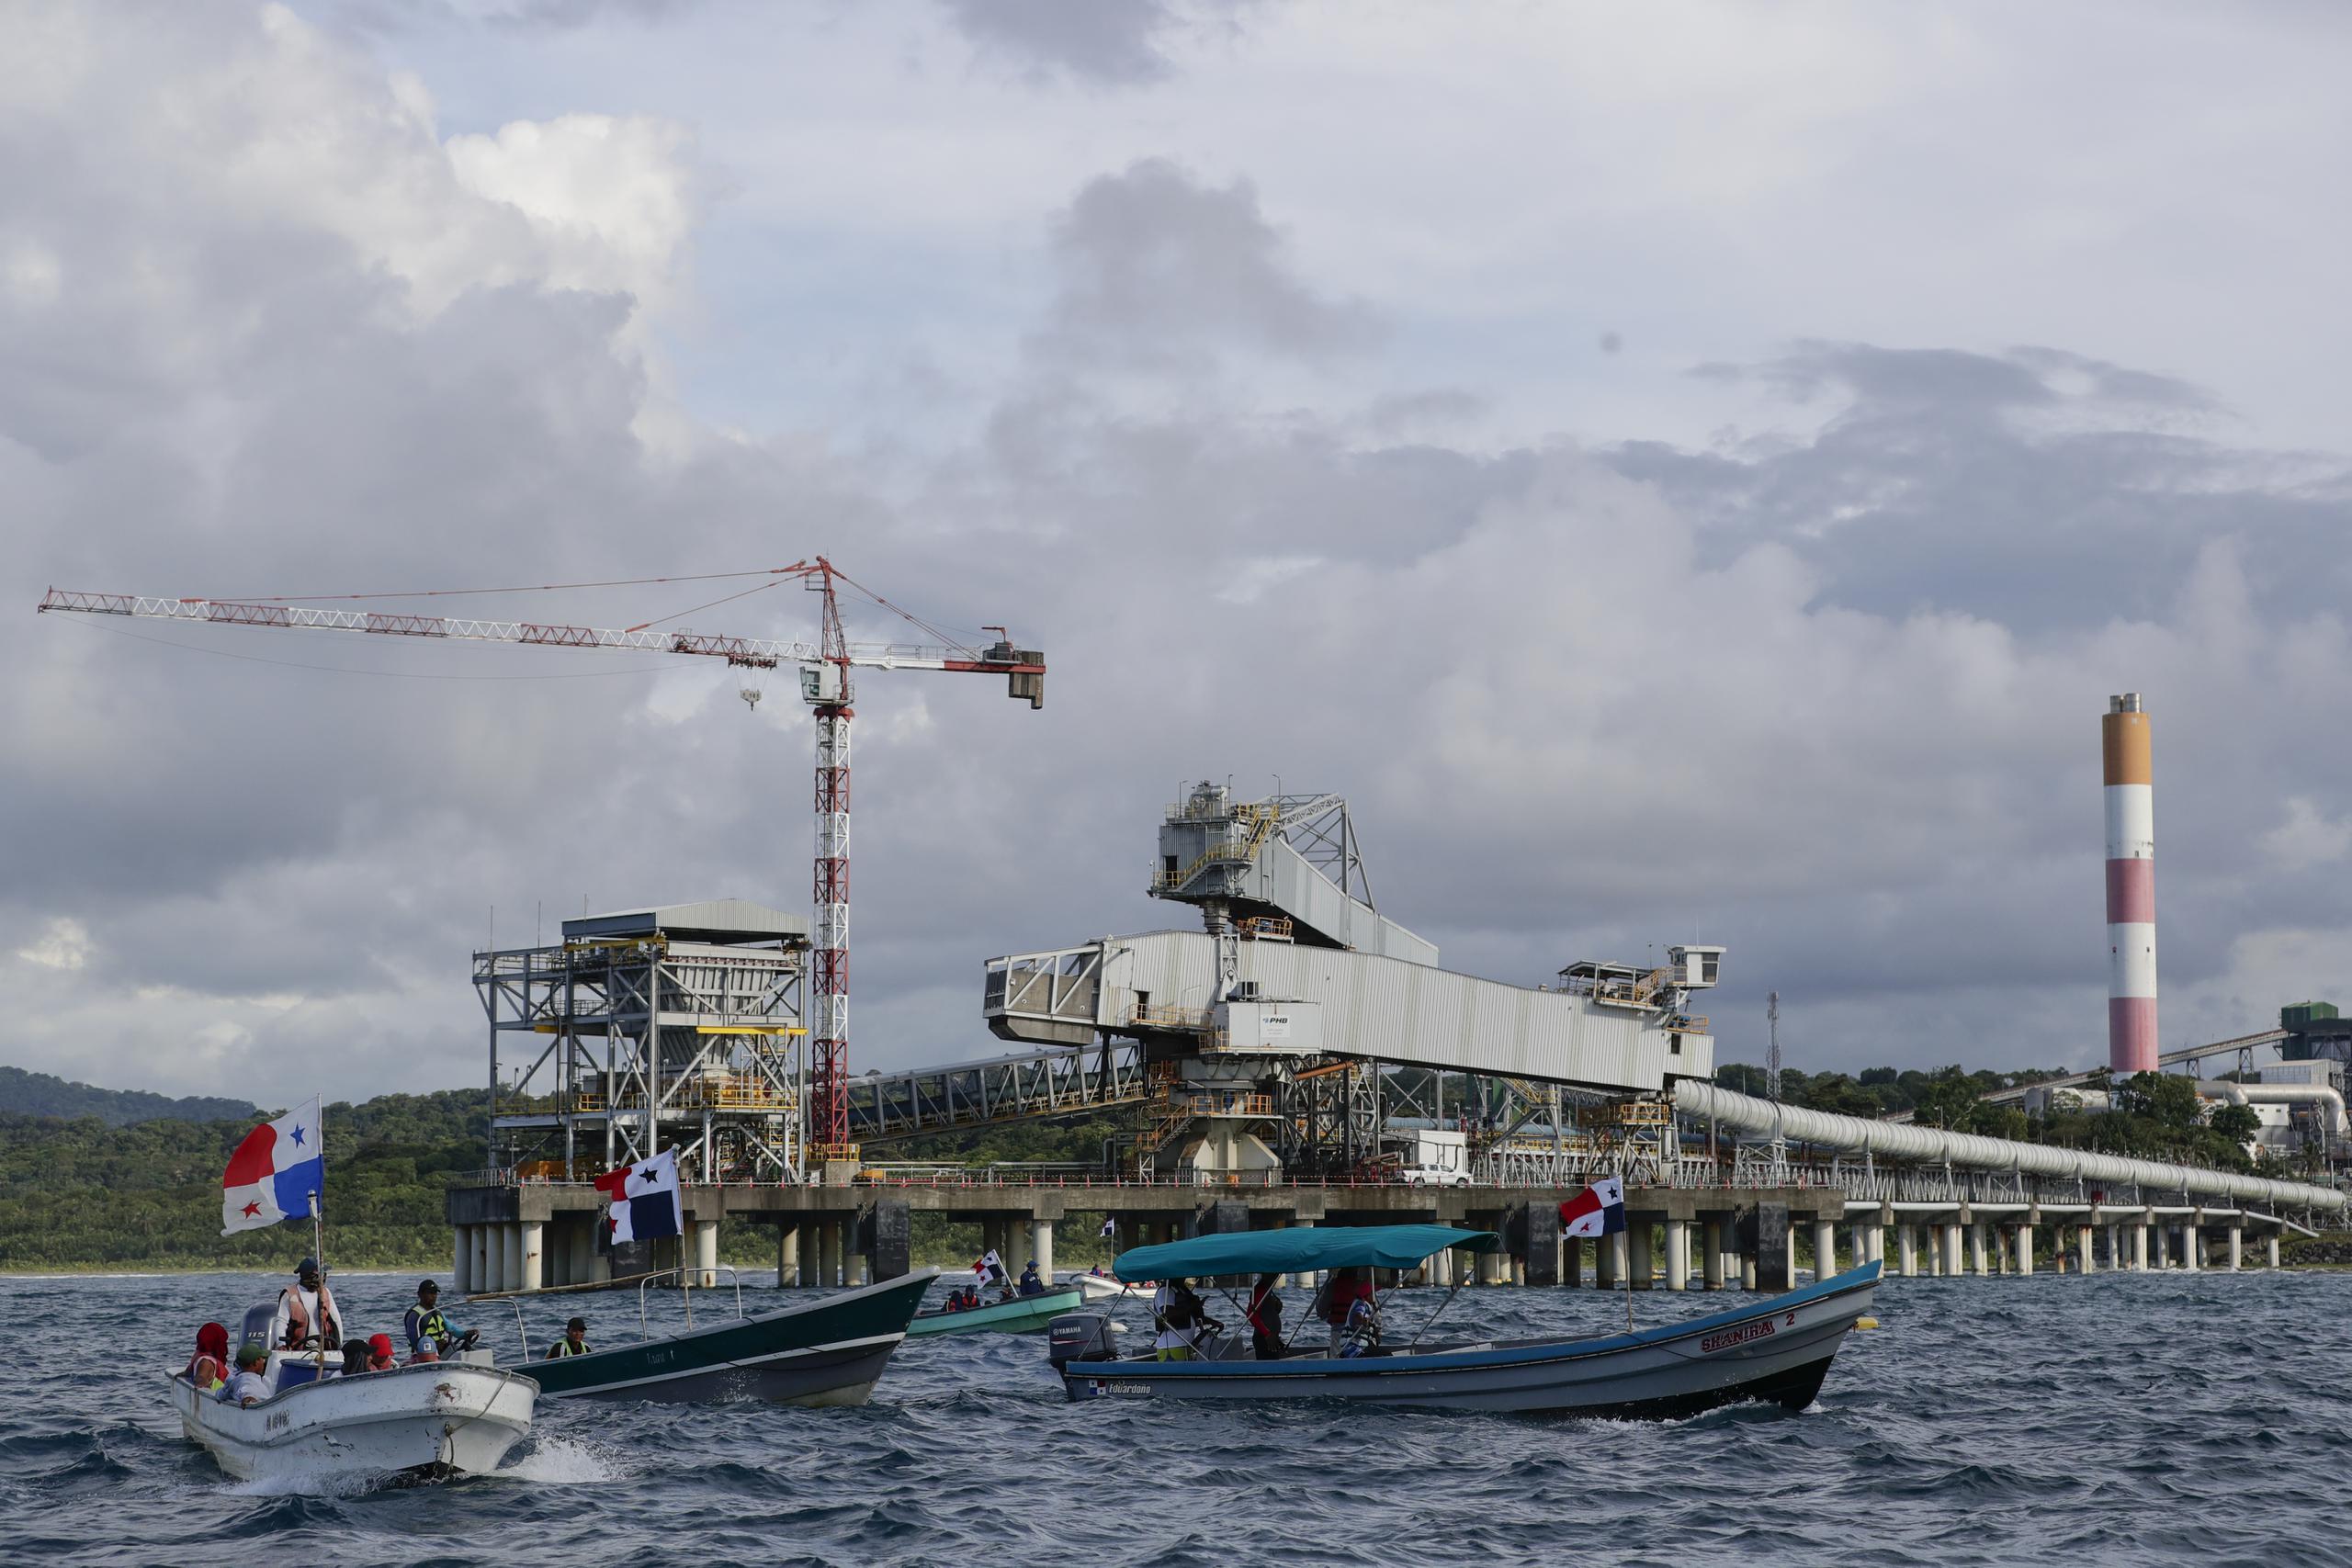 Las redes sociales han bautizado a estos pescadores como los "guerreros del mar", que con su protesta han obligado a la minera a reducir las operaciones de procesamiento de minerales.